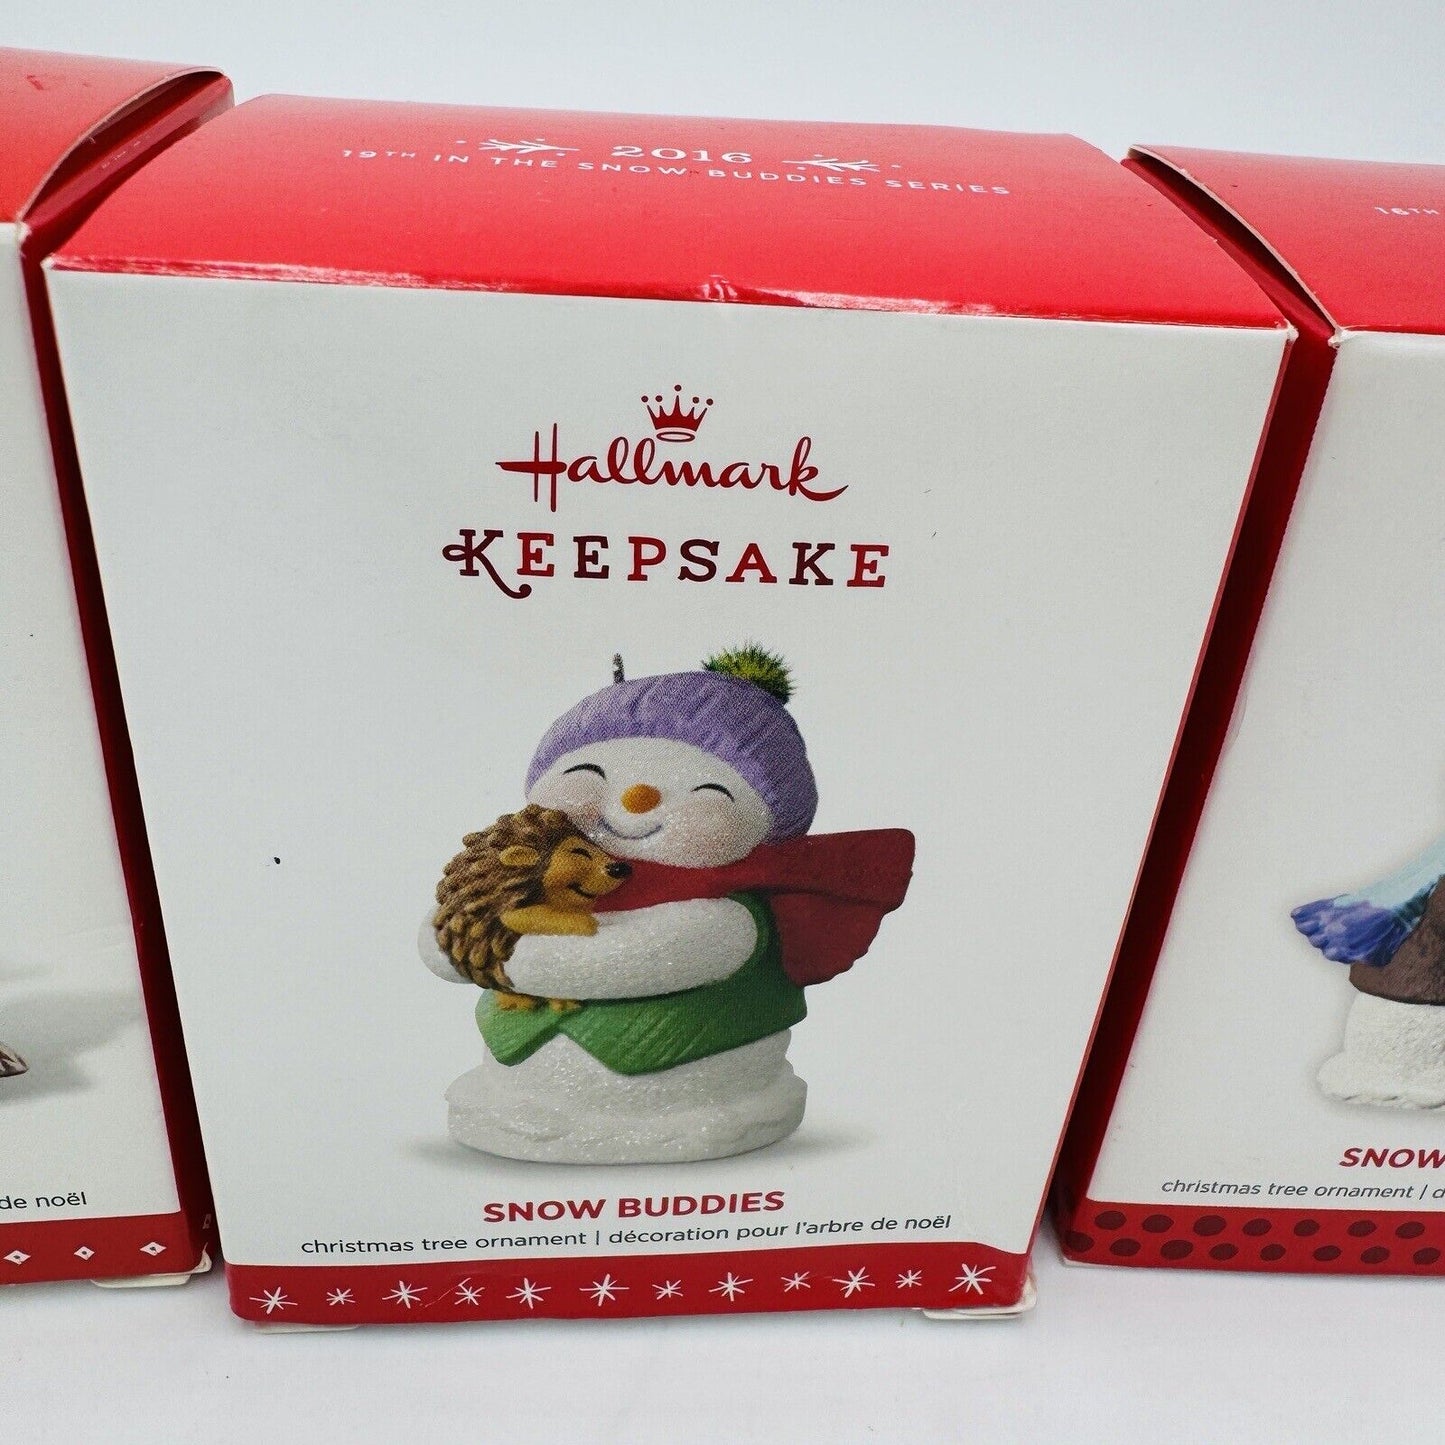 Hallmark Keepsake Snow Buddies Christmas Ornaments Set 4 2013 2015 2016 2006